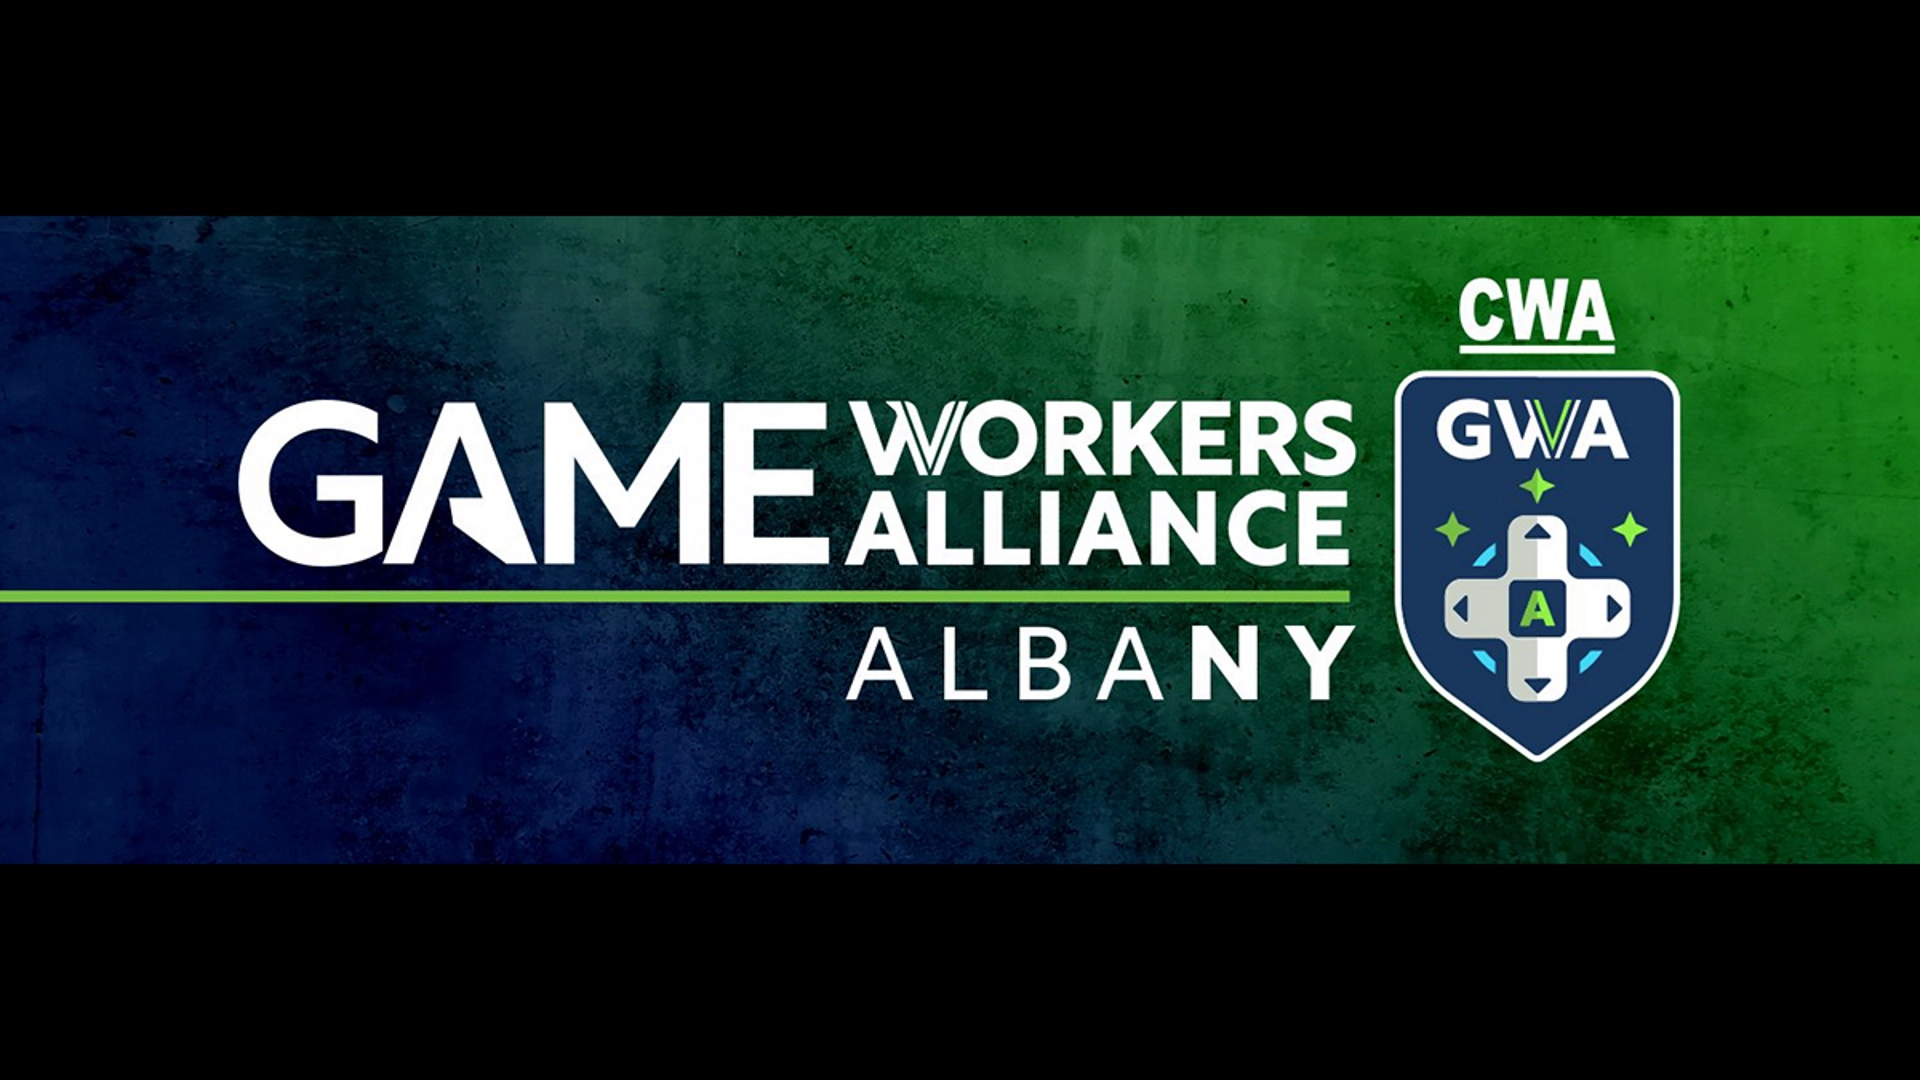 Otro estudio de Activision Blizzard anuncia la formación del sindicato GWA Albany